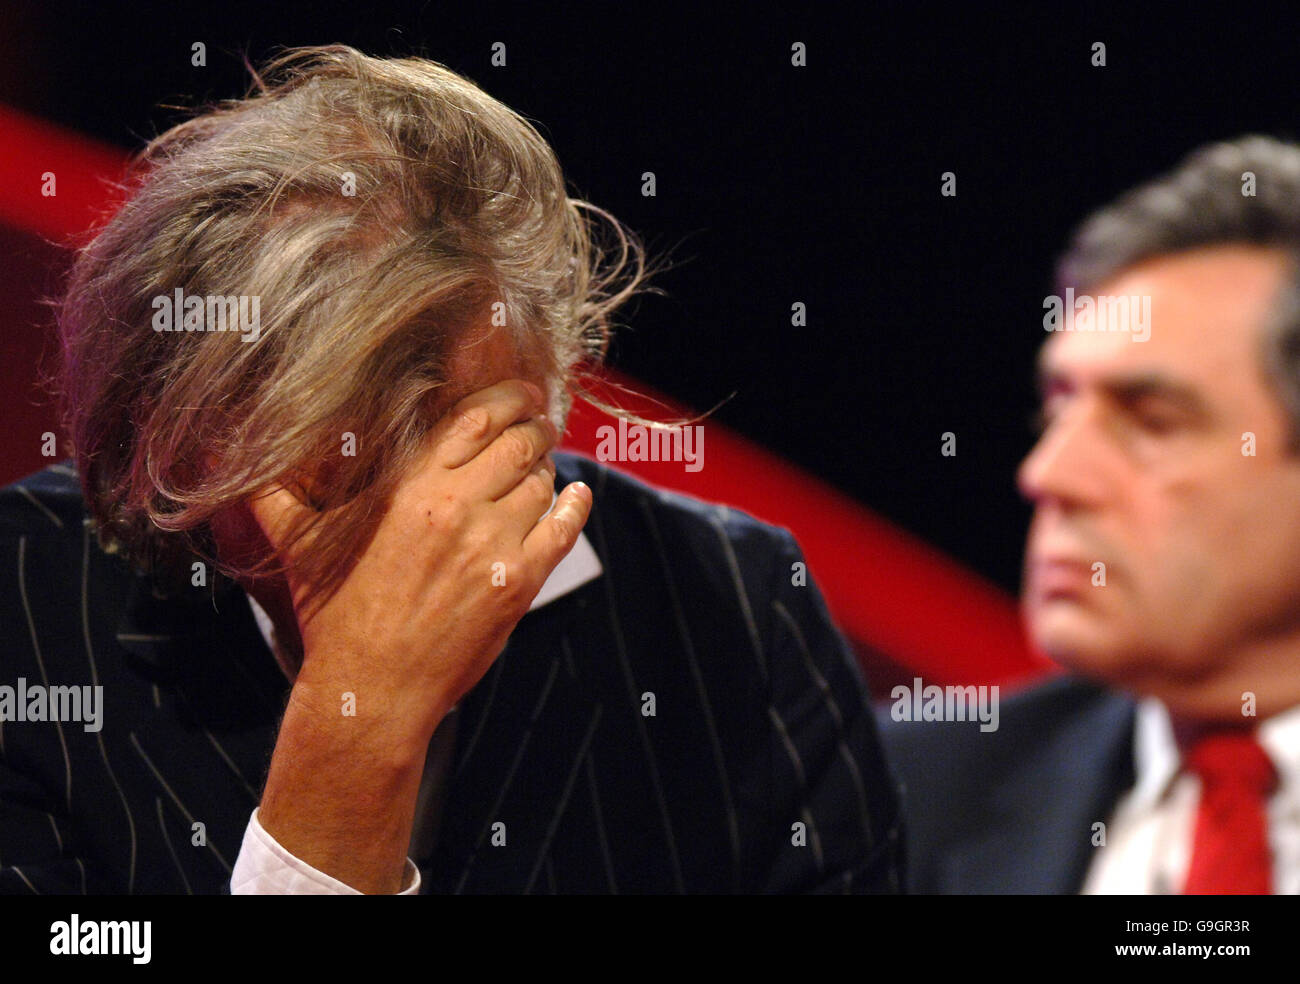 Bob Geldof, fondateur de Live Aid, et Gordon Brown, chancelier lors d'un débat lors de la conférence du Parti travailliste sur les progrès réalisés depuis la conférence du G8 de Gleneagles de l'été dernier sur l'aide, l'allégement de la dette et la réduction des émissions de gaz à effet de serre. Banque D'Images